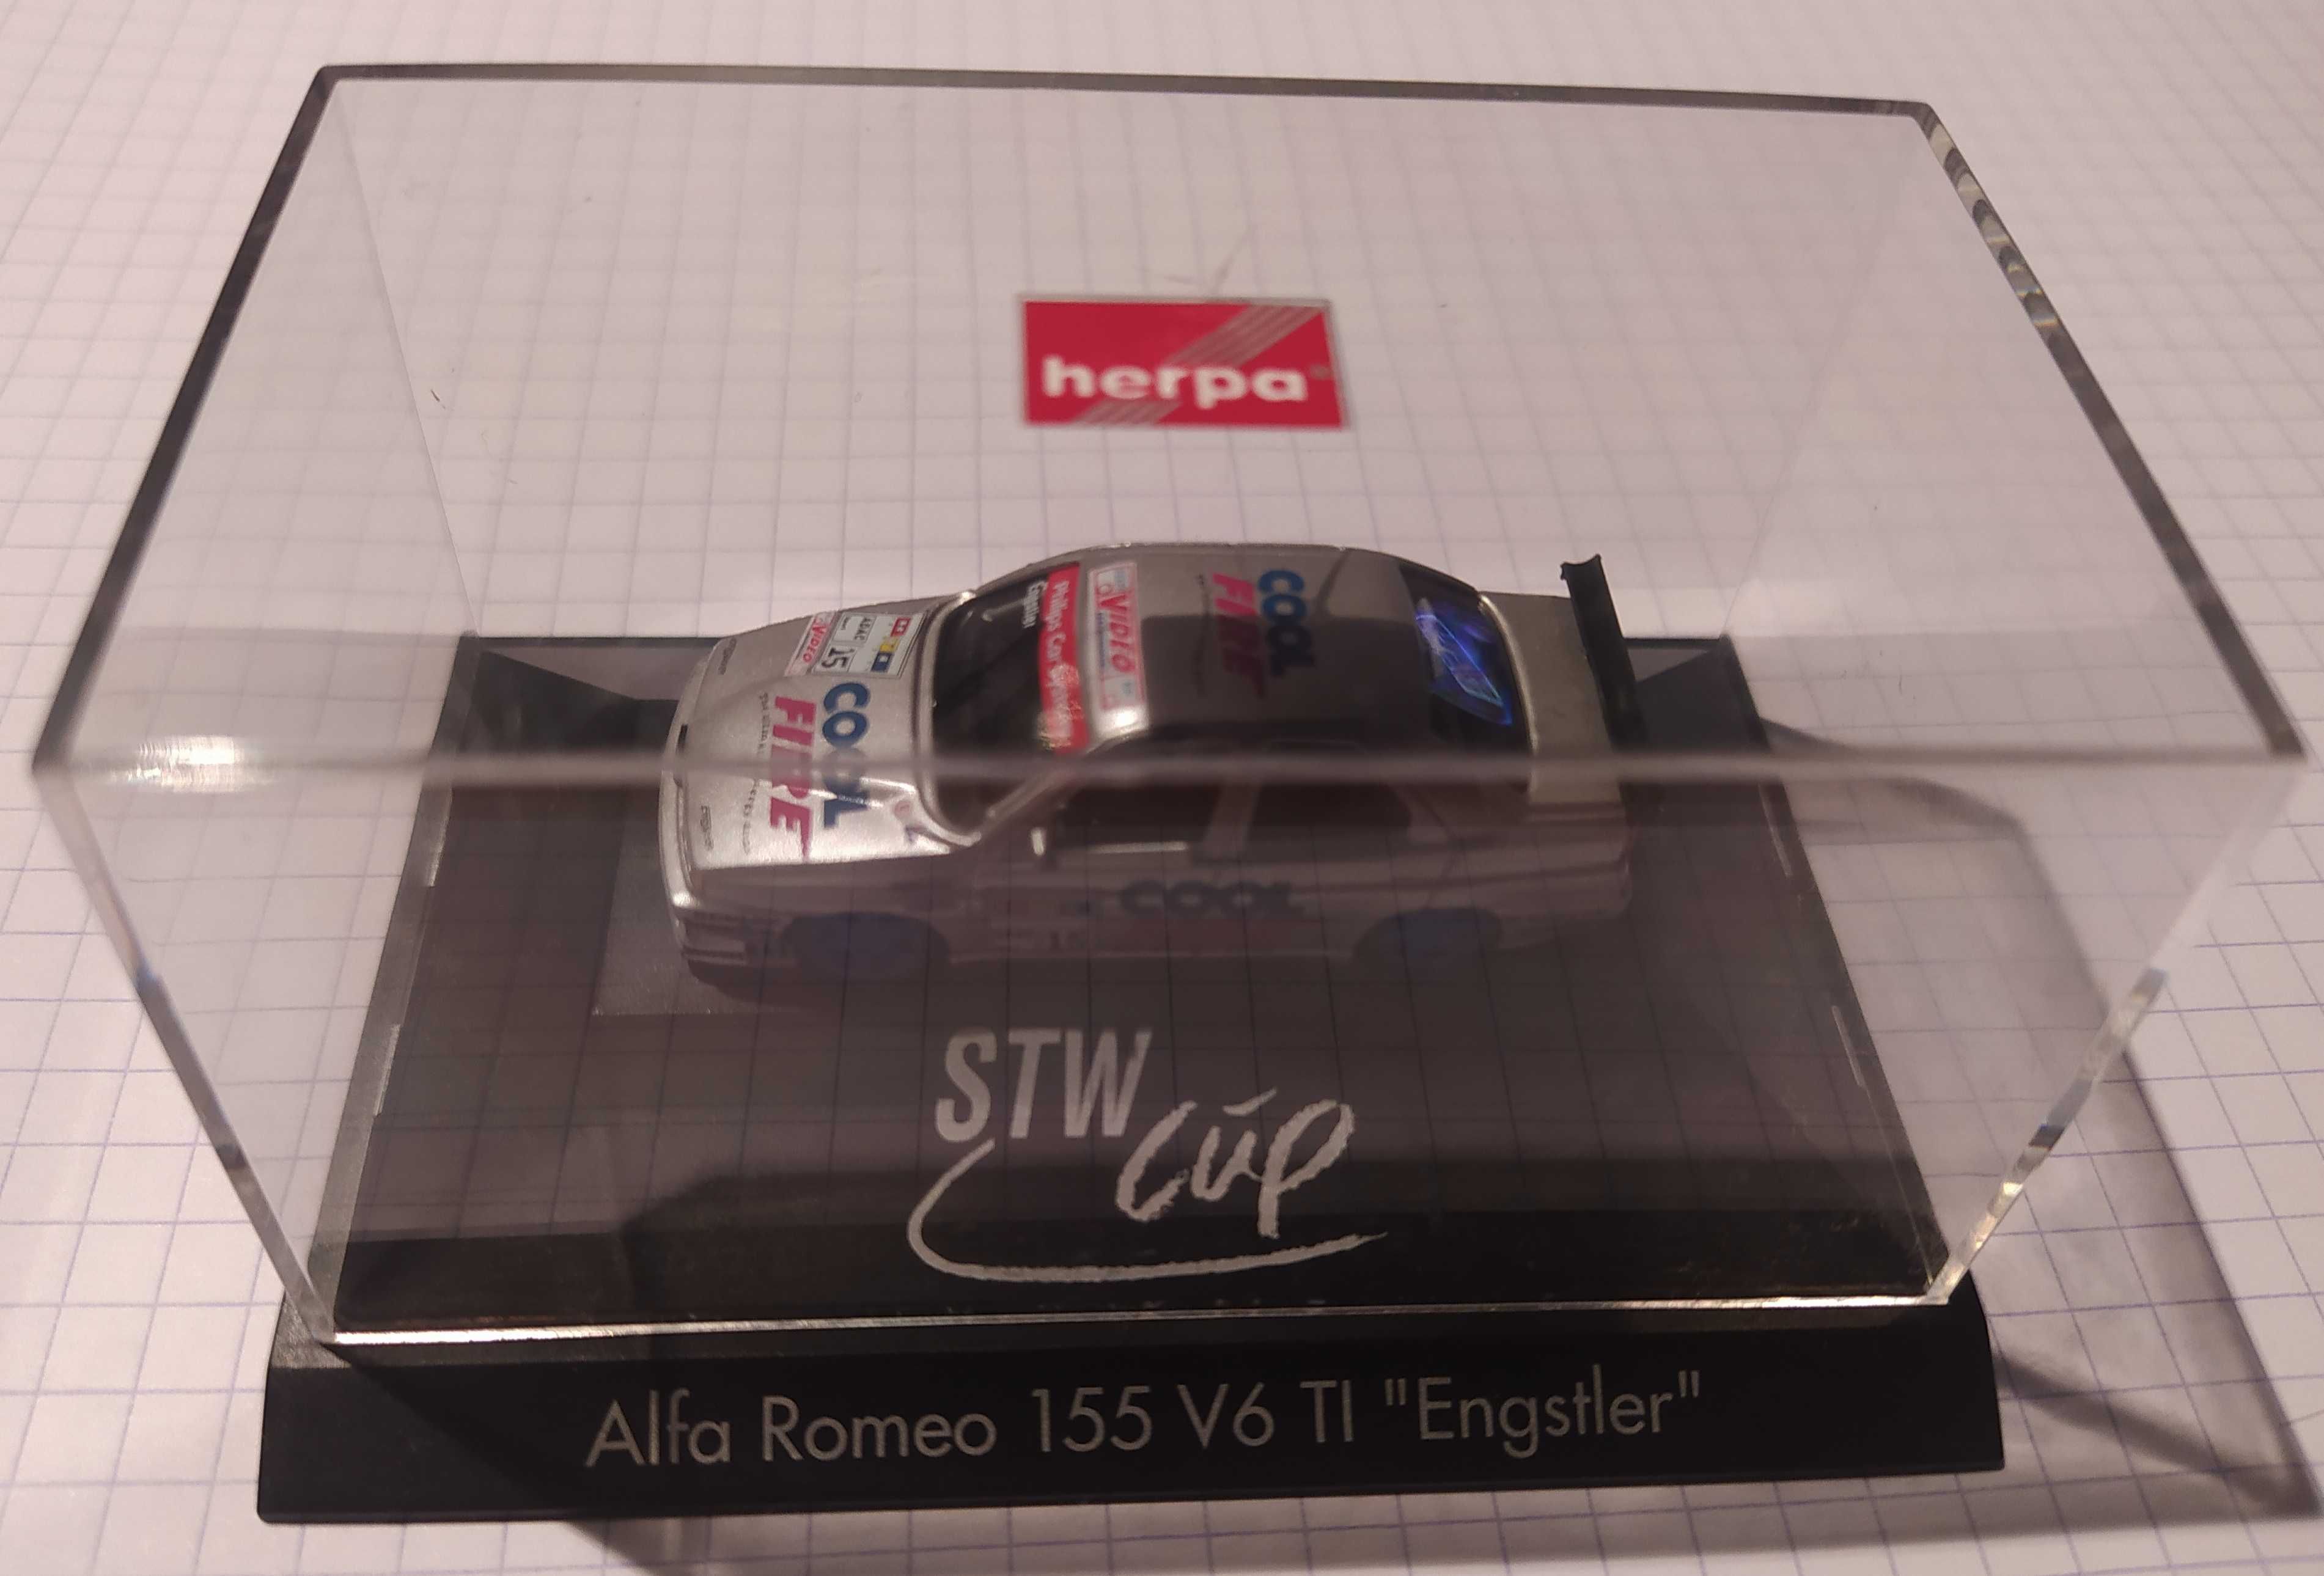 Alfa Romeo 155 V6 TI "Engstler" 1:87 Herpa